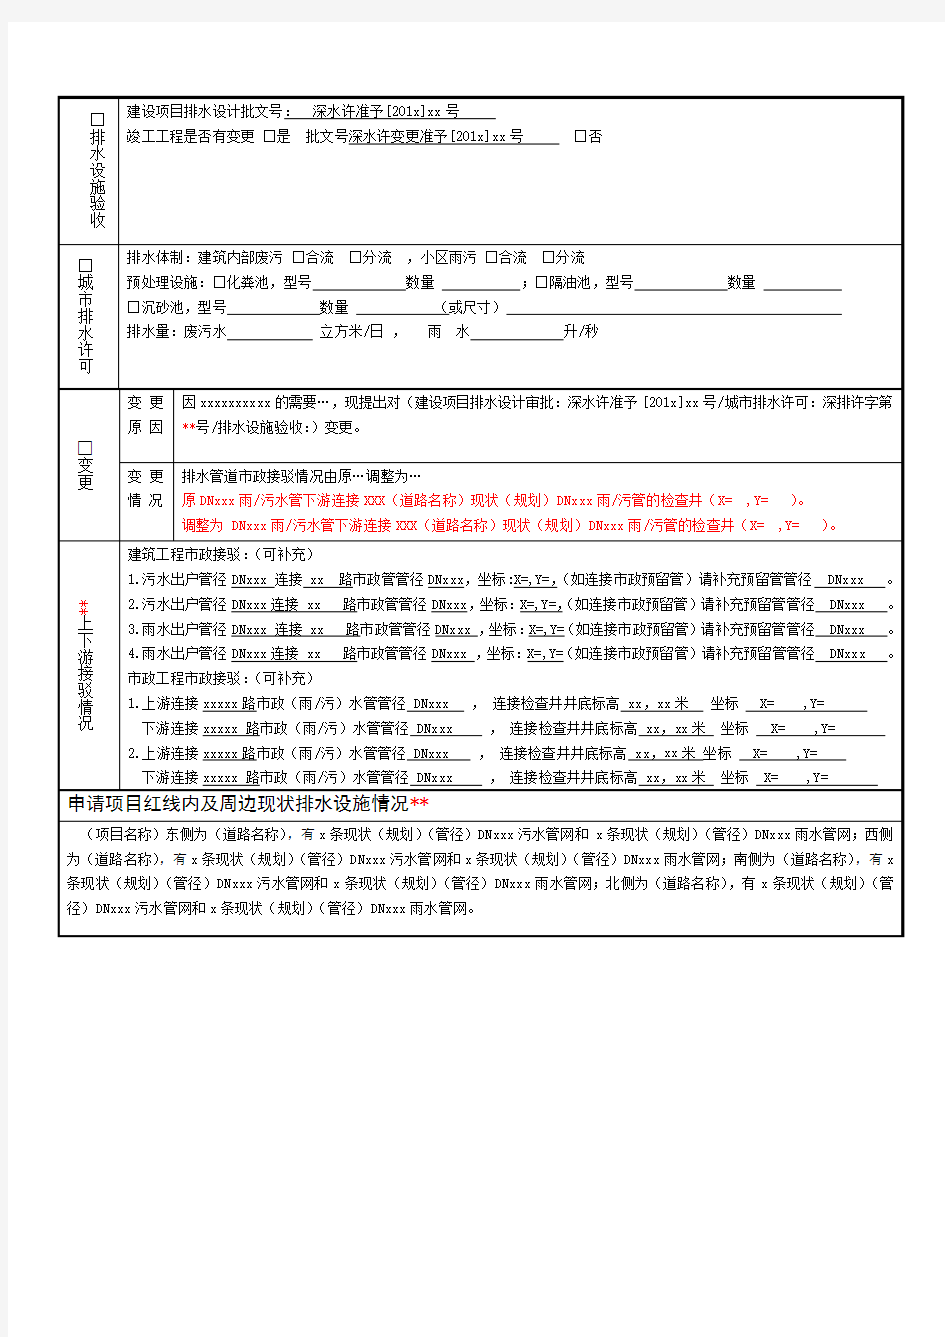 (参考)深圳市水务局排水行政许可业务申请表